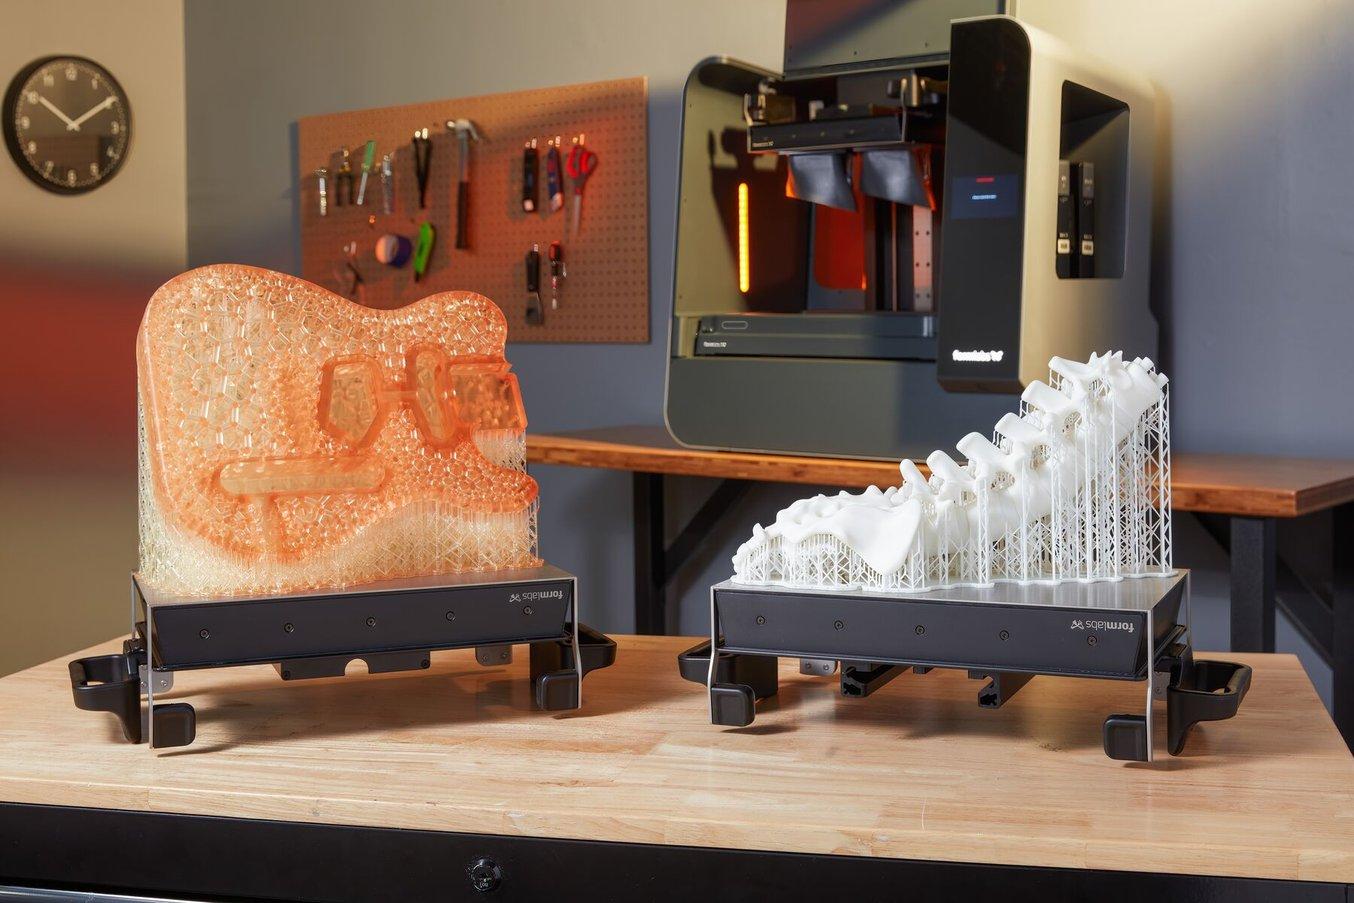 构建平台上的 3D 打印吉他框架和 3D 打印脊柱解剖模型，放置在 Form 3L 立体光刻 (SLA) 3D 打印机前面的桌子上。